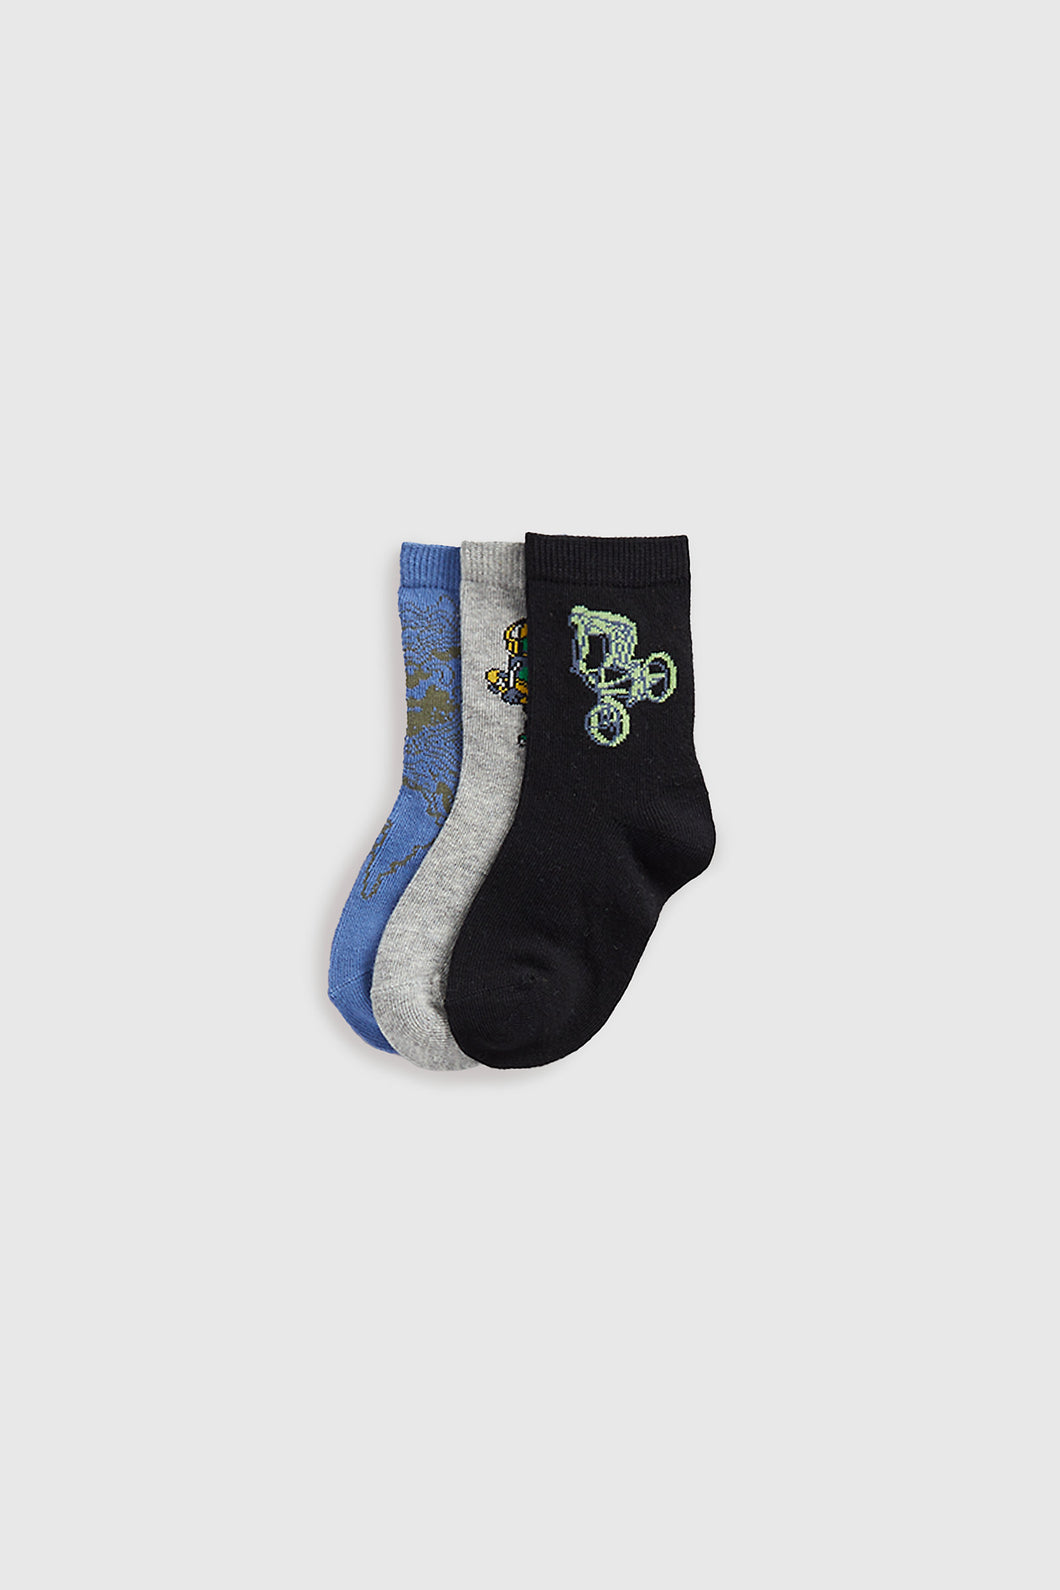 Mothercare Skater Socks - 3 Pack